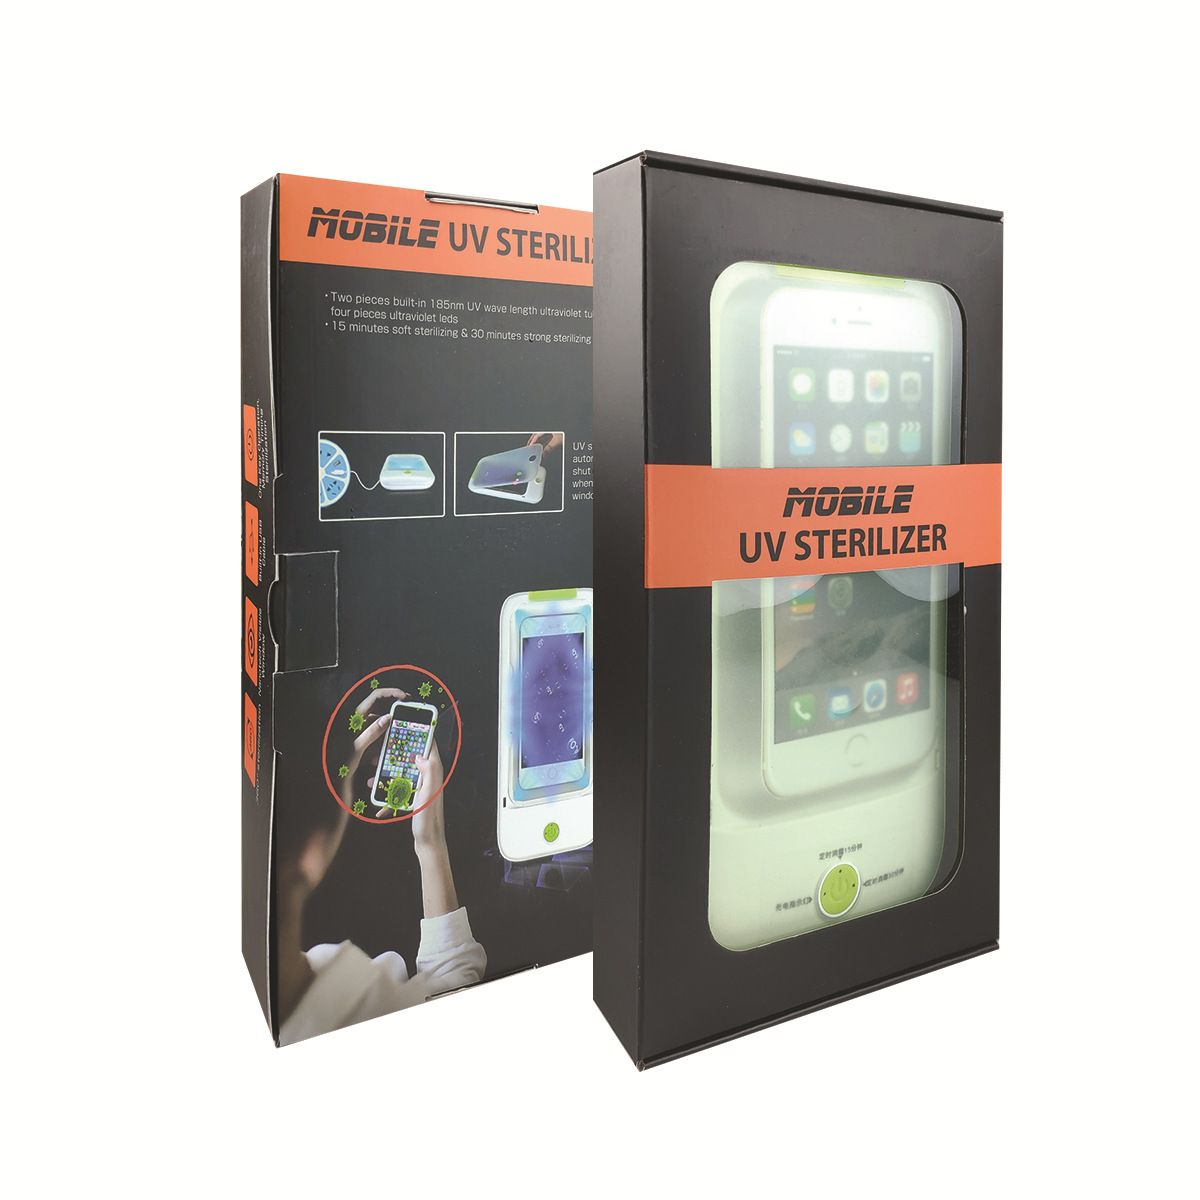 Sorbo-9501-Multifunction-USB-Charging-LED-UV-Ozone-360deg-Disinfection-Box-Phone-Sterilizer-with-Sky-1666130